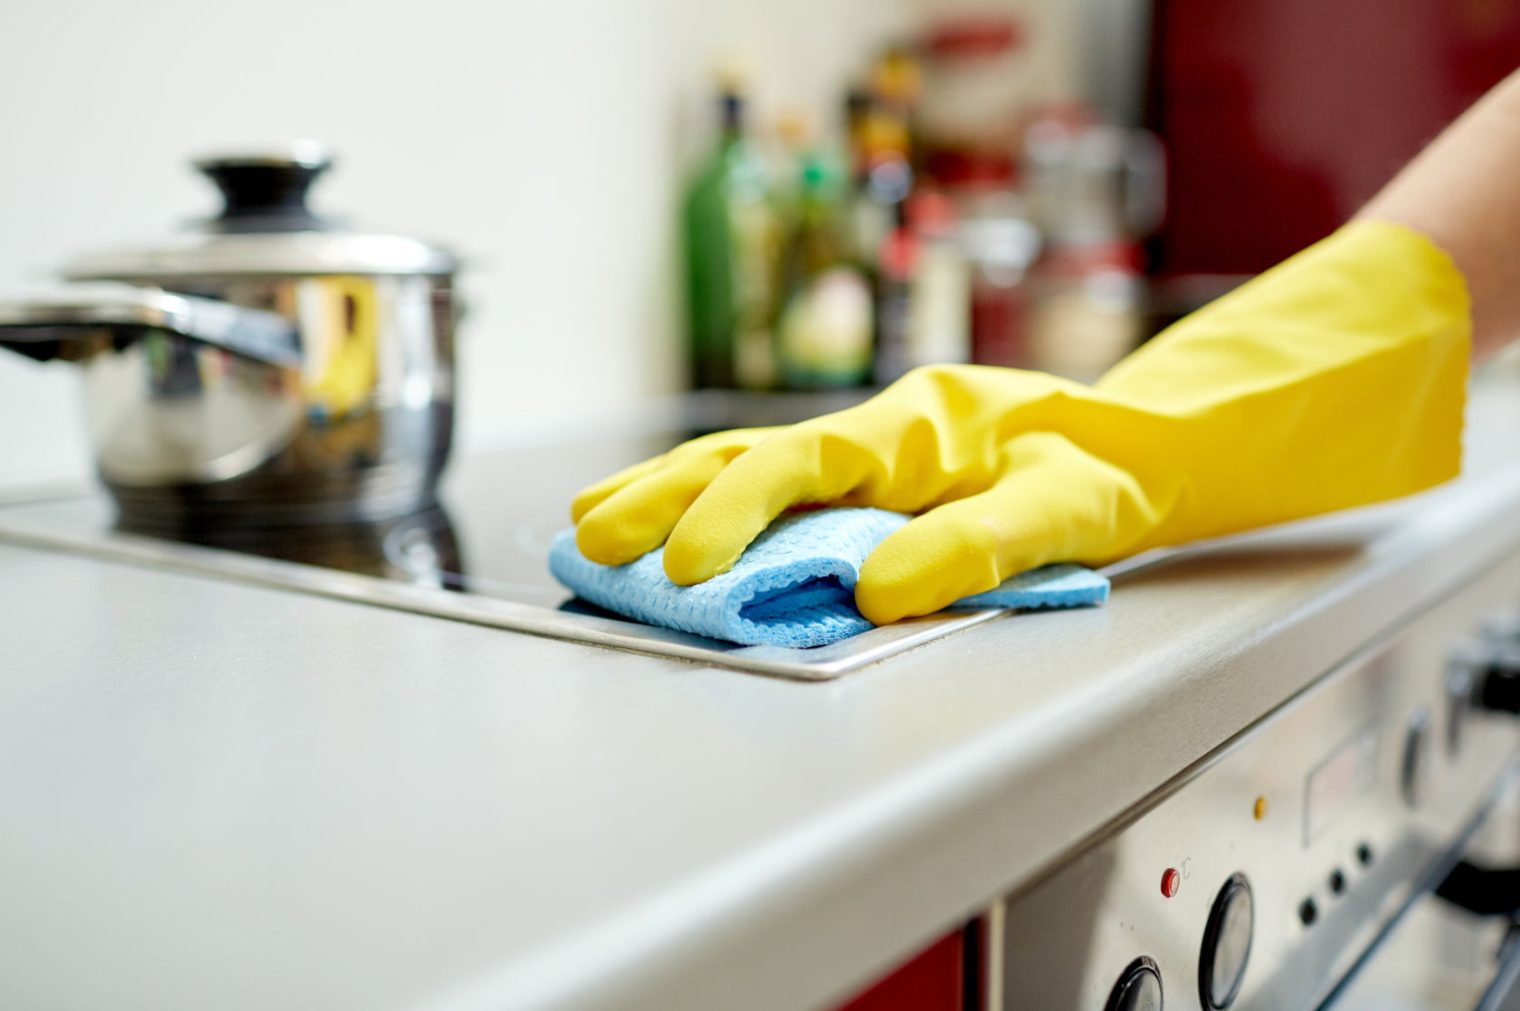 اهمية التنظيف المستمر من شركة تنظيف المطابخ وإزالة الدهون